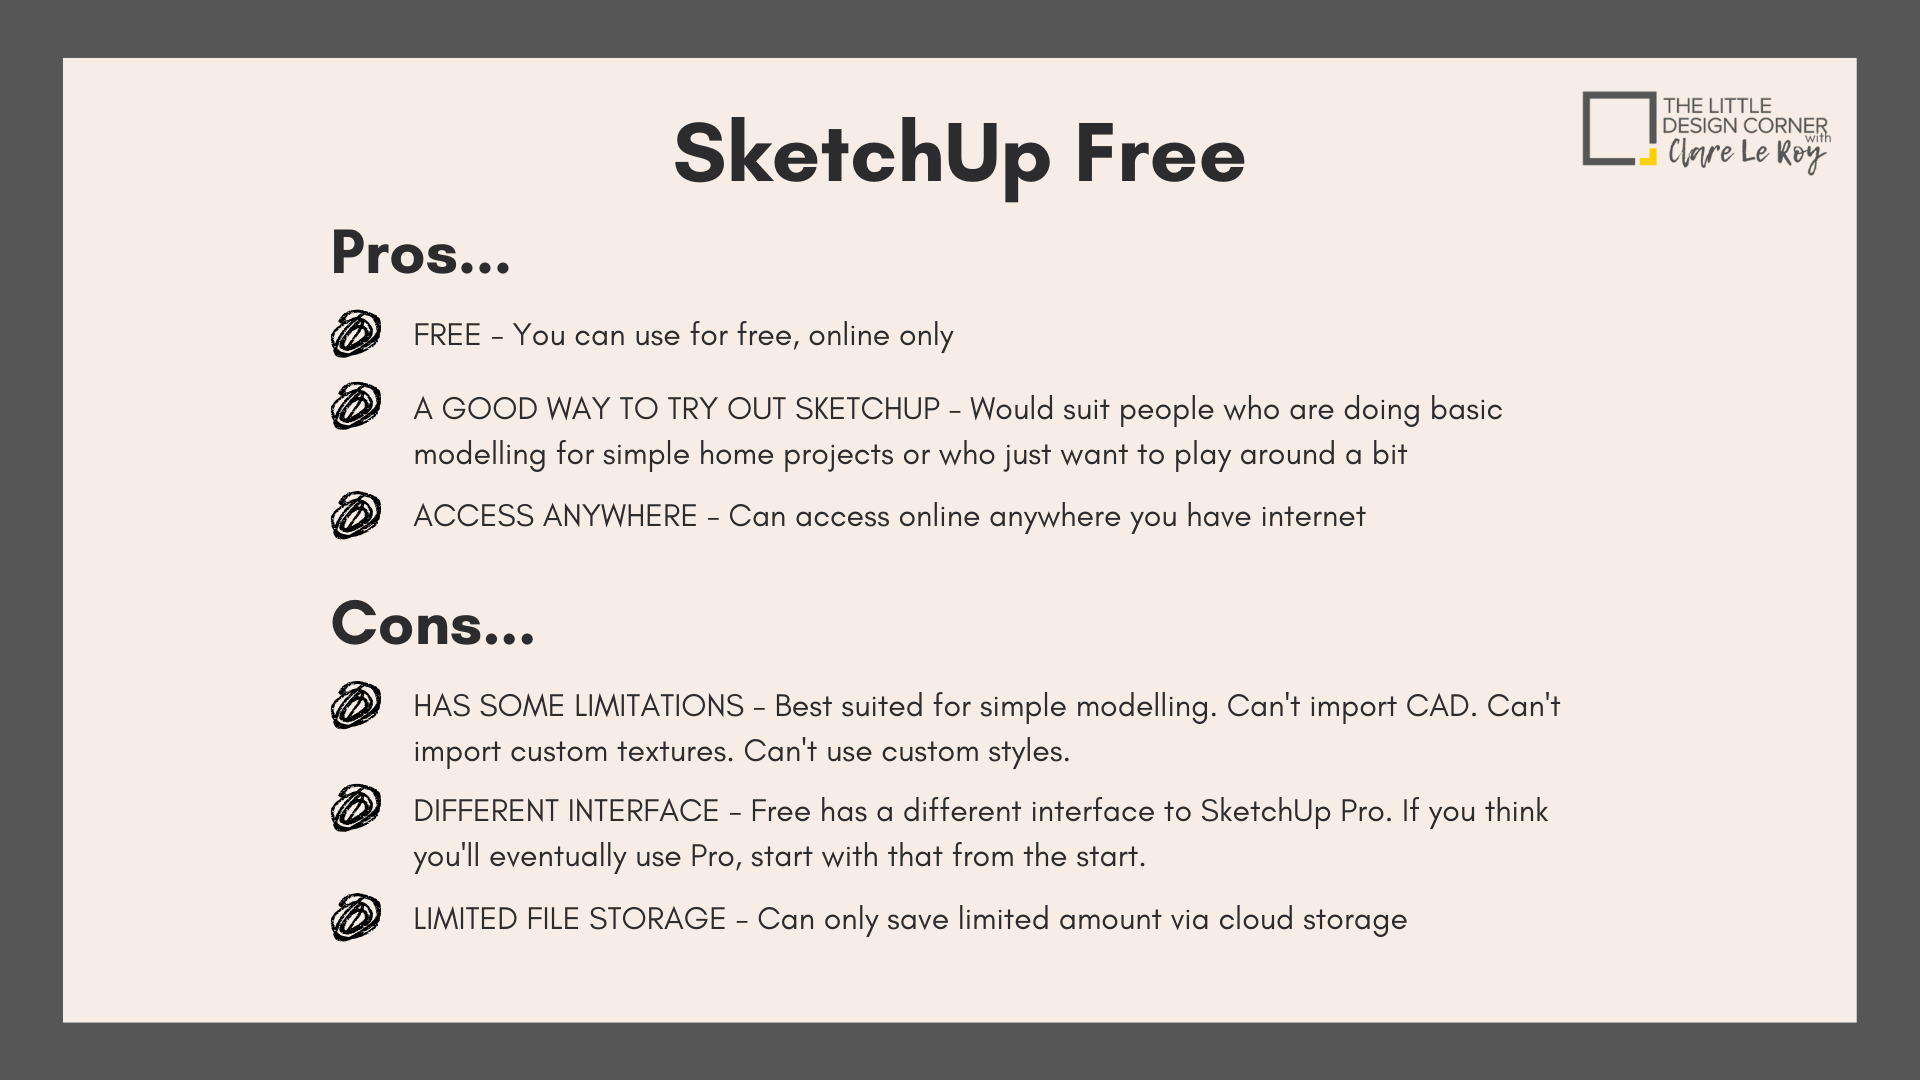 sketchup free vs pro 2014